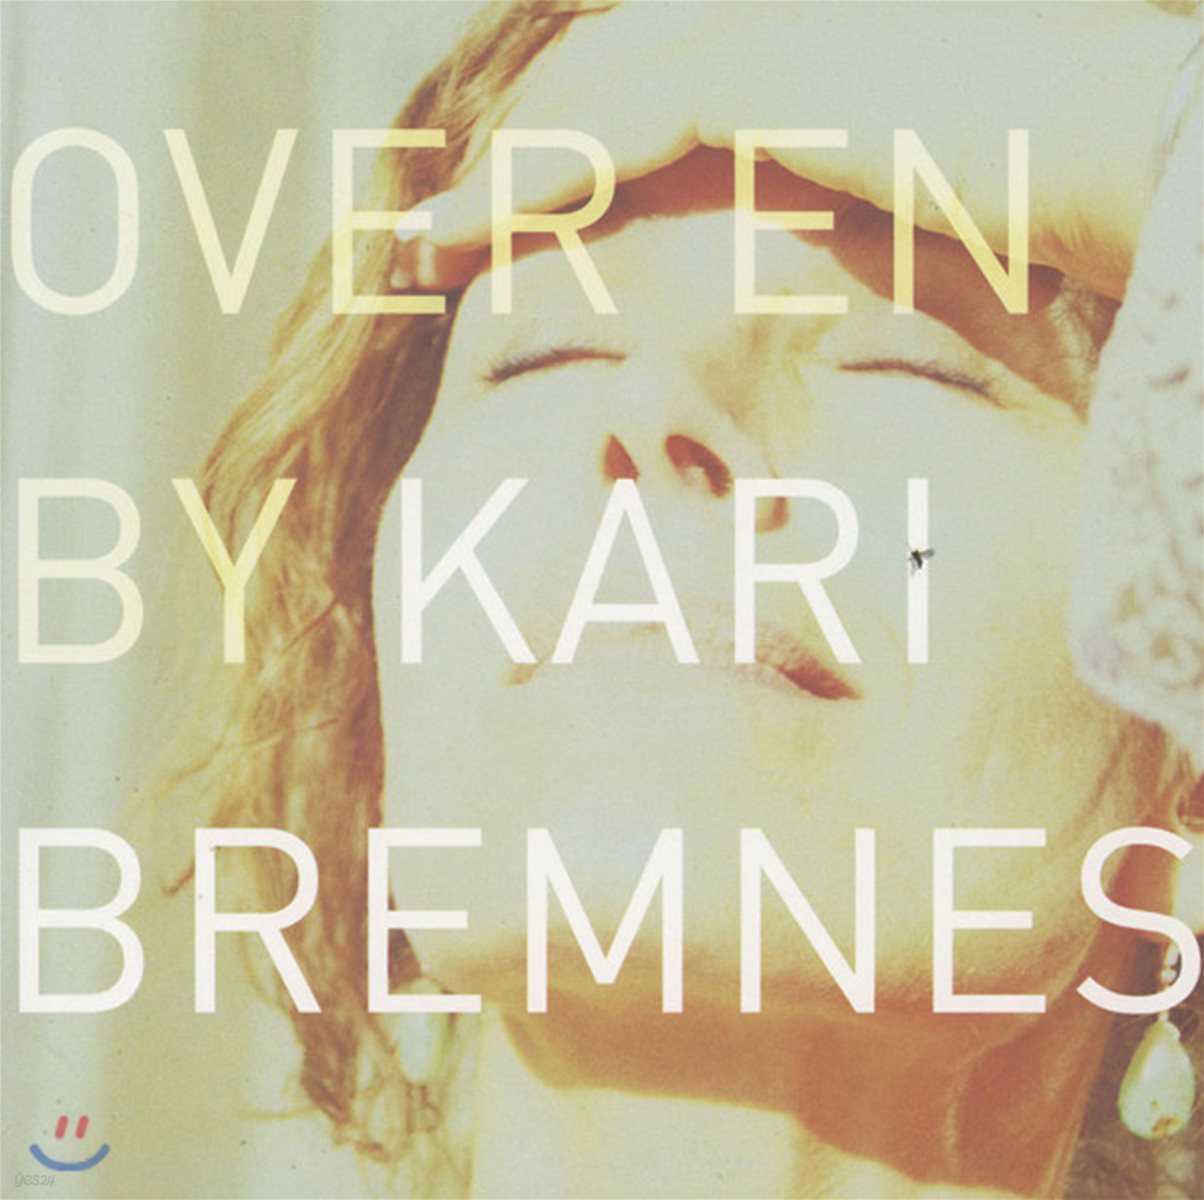 Kari Bremnes (카리 브렘네스) - Over En By [2 LP]